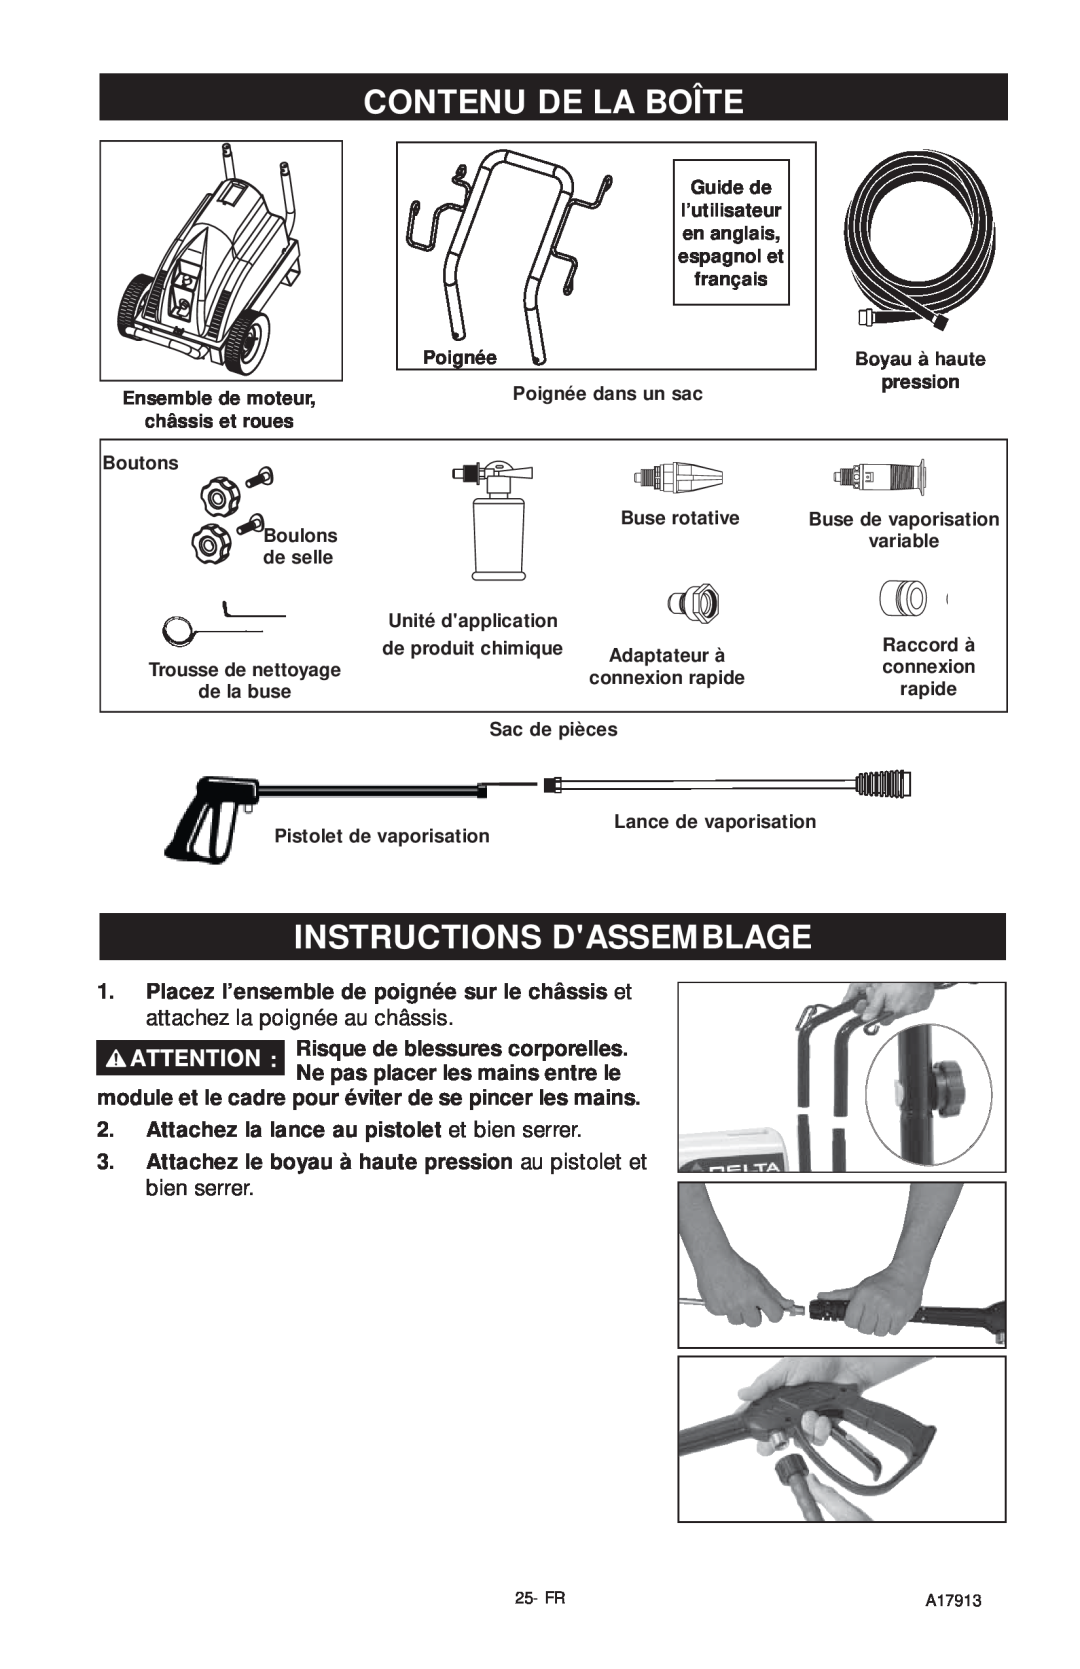 DeVillbiss Air Power Company A17913, VR1600E important safety instructions Contenu De La Boîte, Instructions Dassemblage 